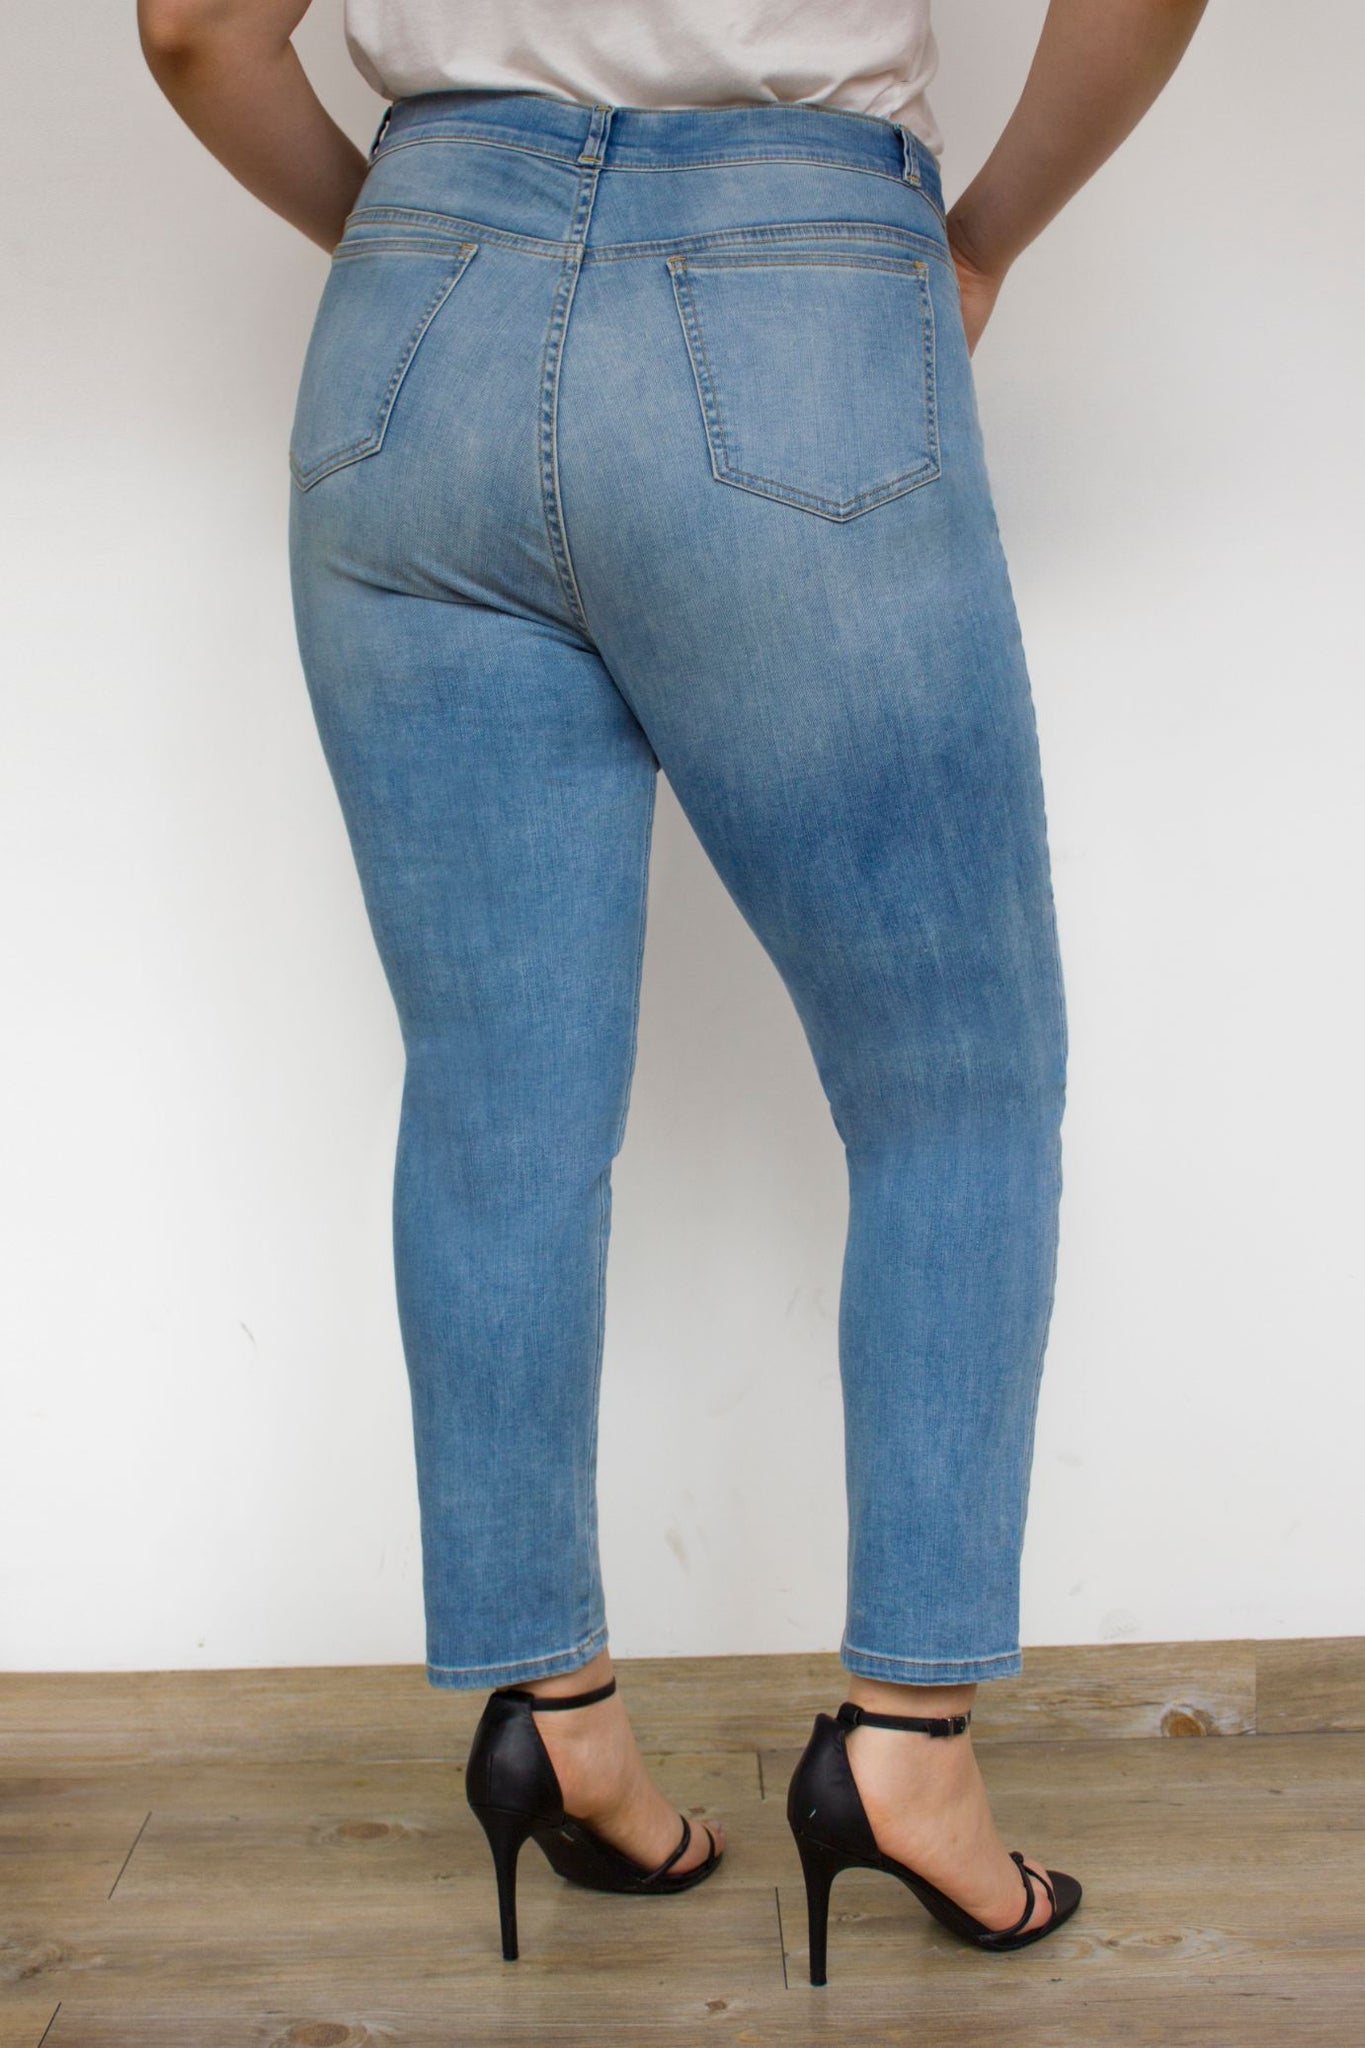 OHPOMP!® Curvy Cintura Alta Skinny Jeans Flores Azul Claro T100